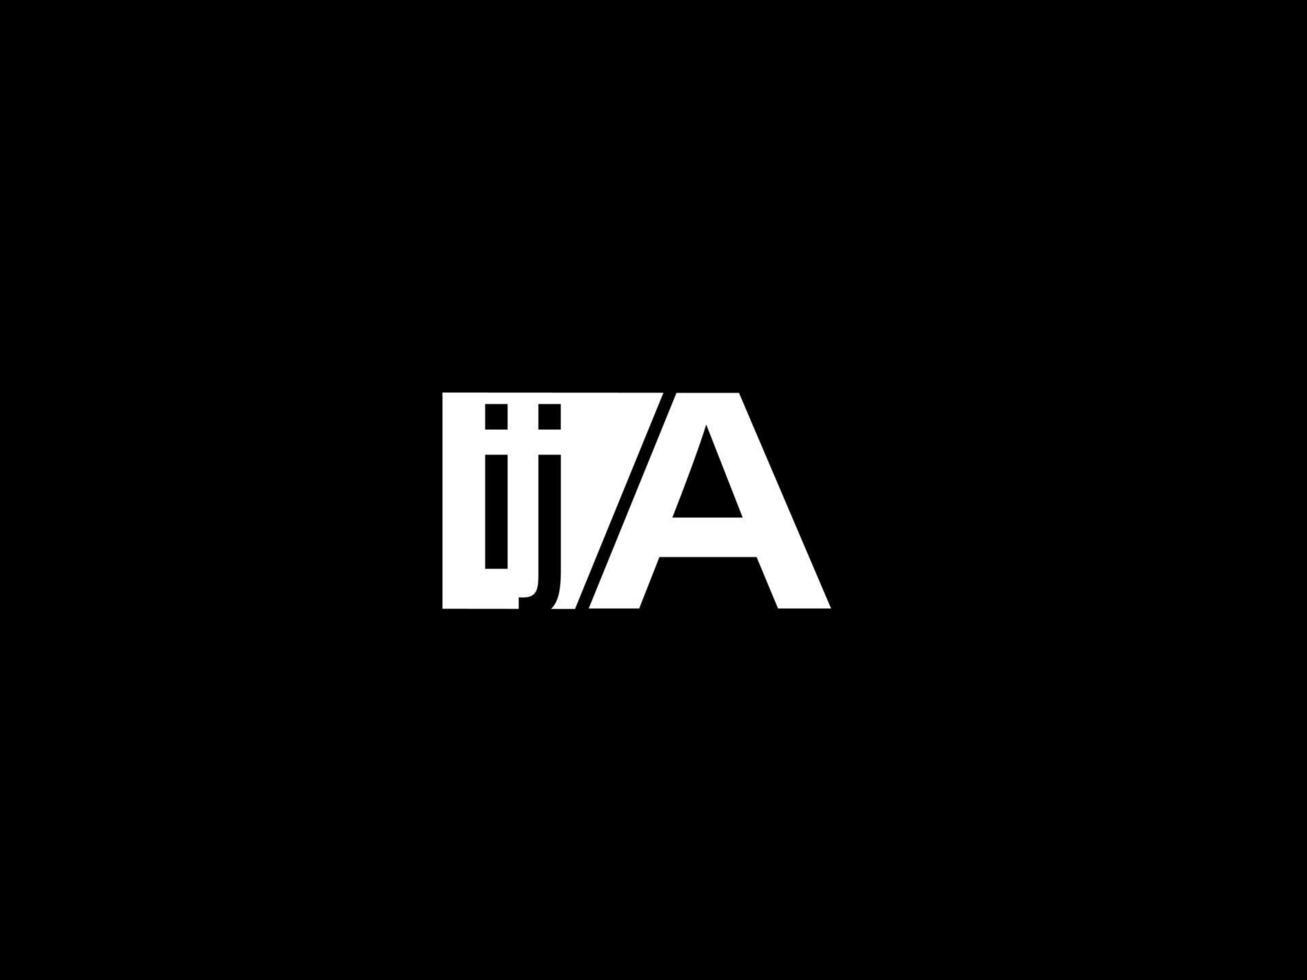 logo ija et art vectoriel de conception graphique, icônes isolées sur fond noir